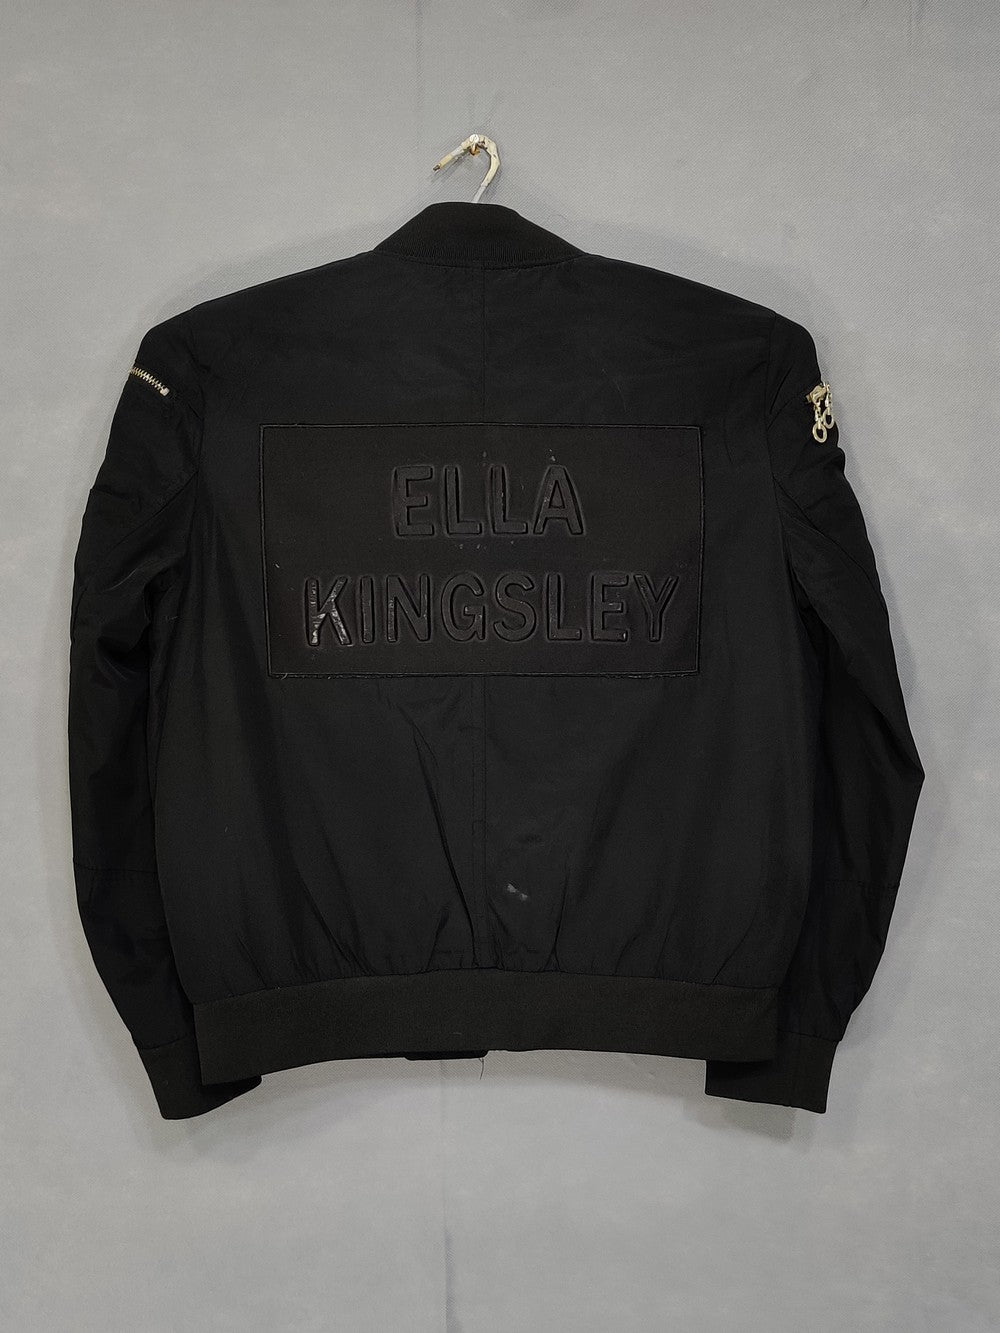 Ella Kingsley Branded Original Ban Collar Jacket For Women